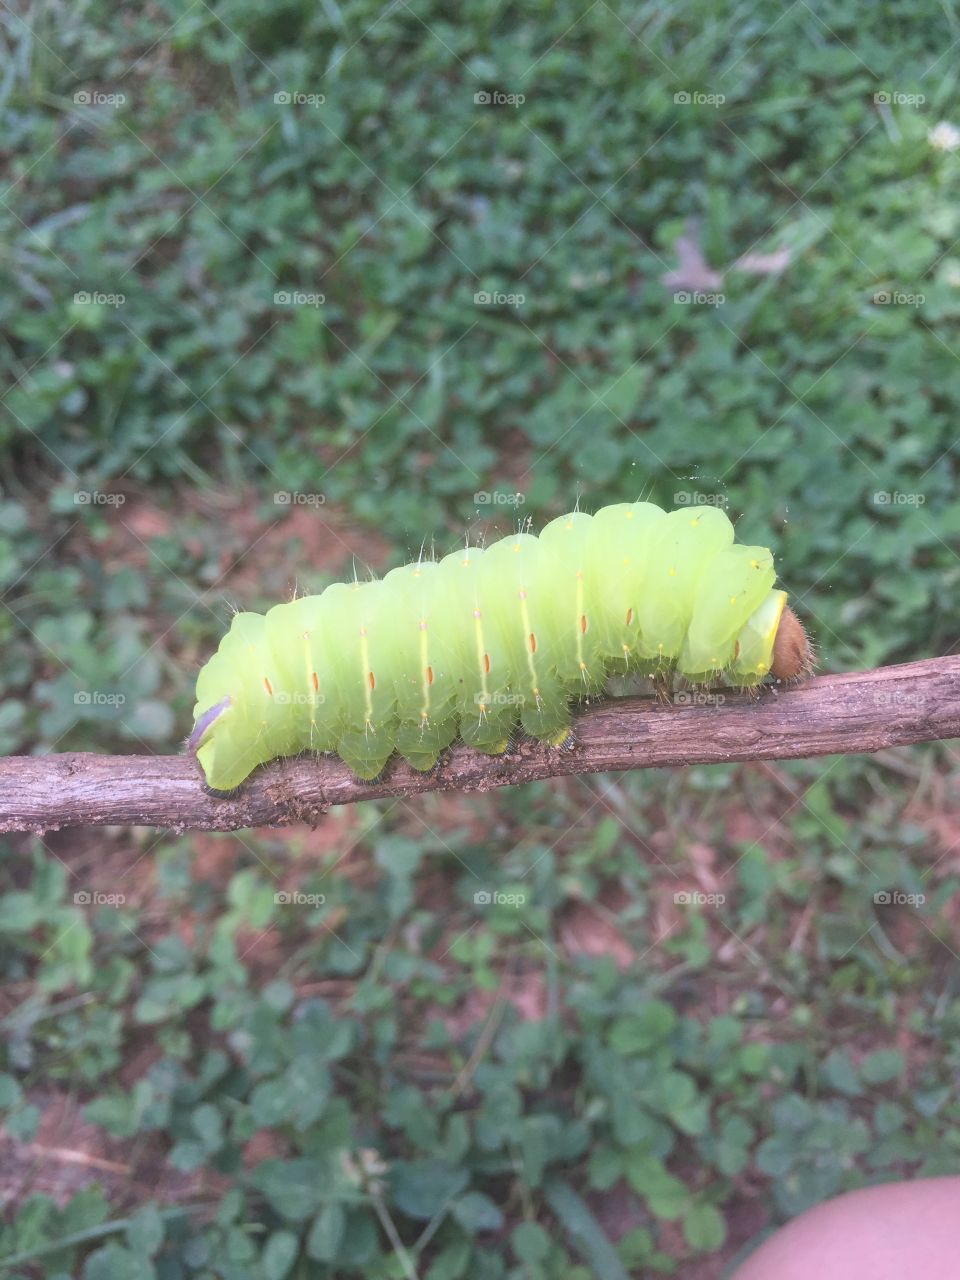 Plump caterpillar 